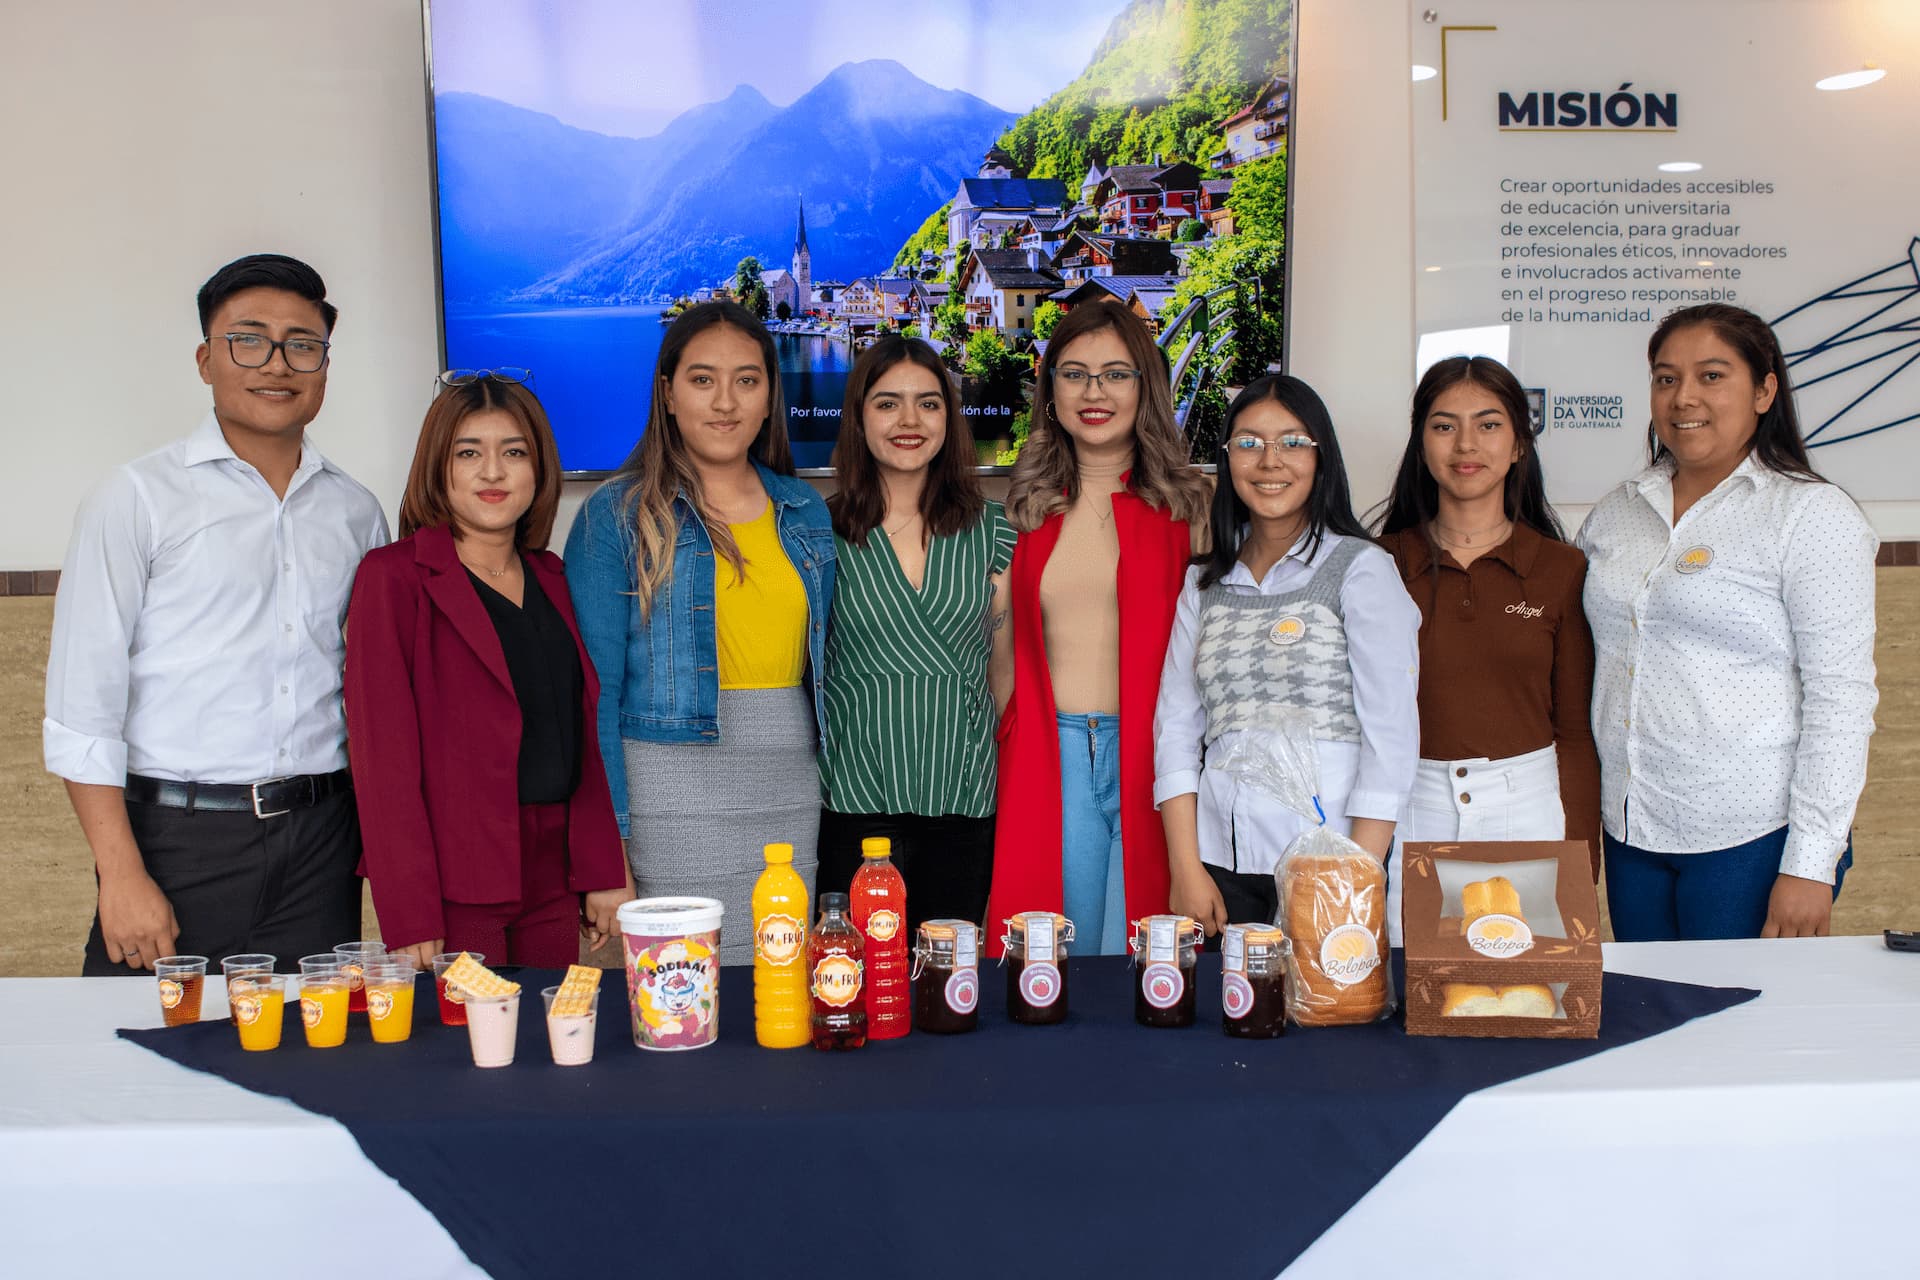 Presentación de proyecto “Higiene y Control de Alimentos” | Universidad da Vinci de Guatemala